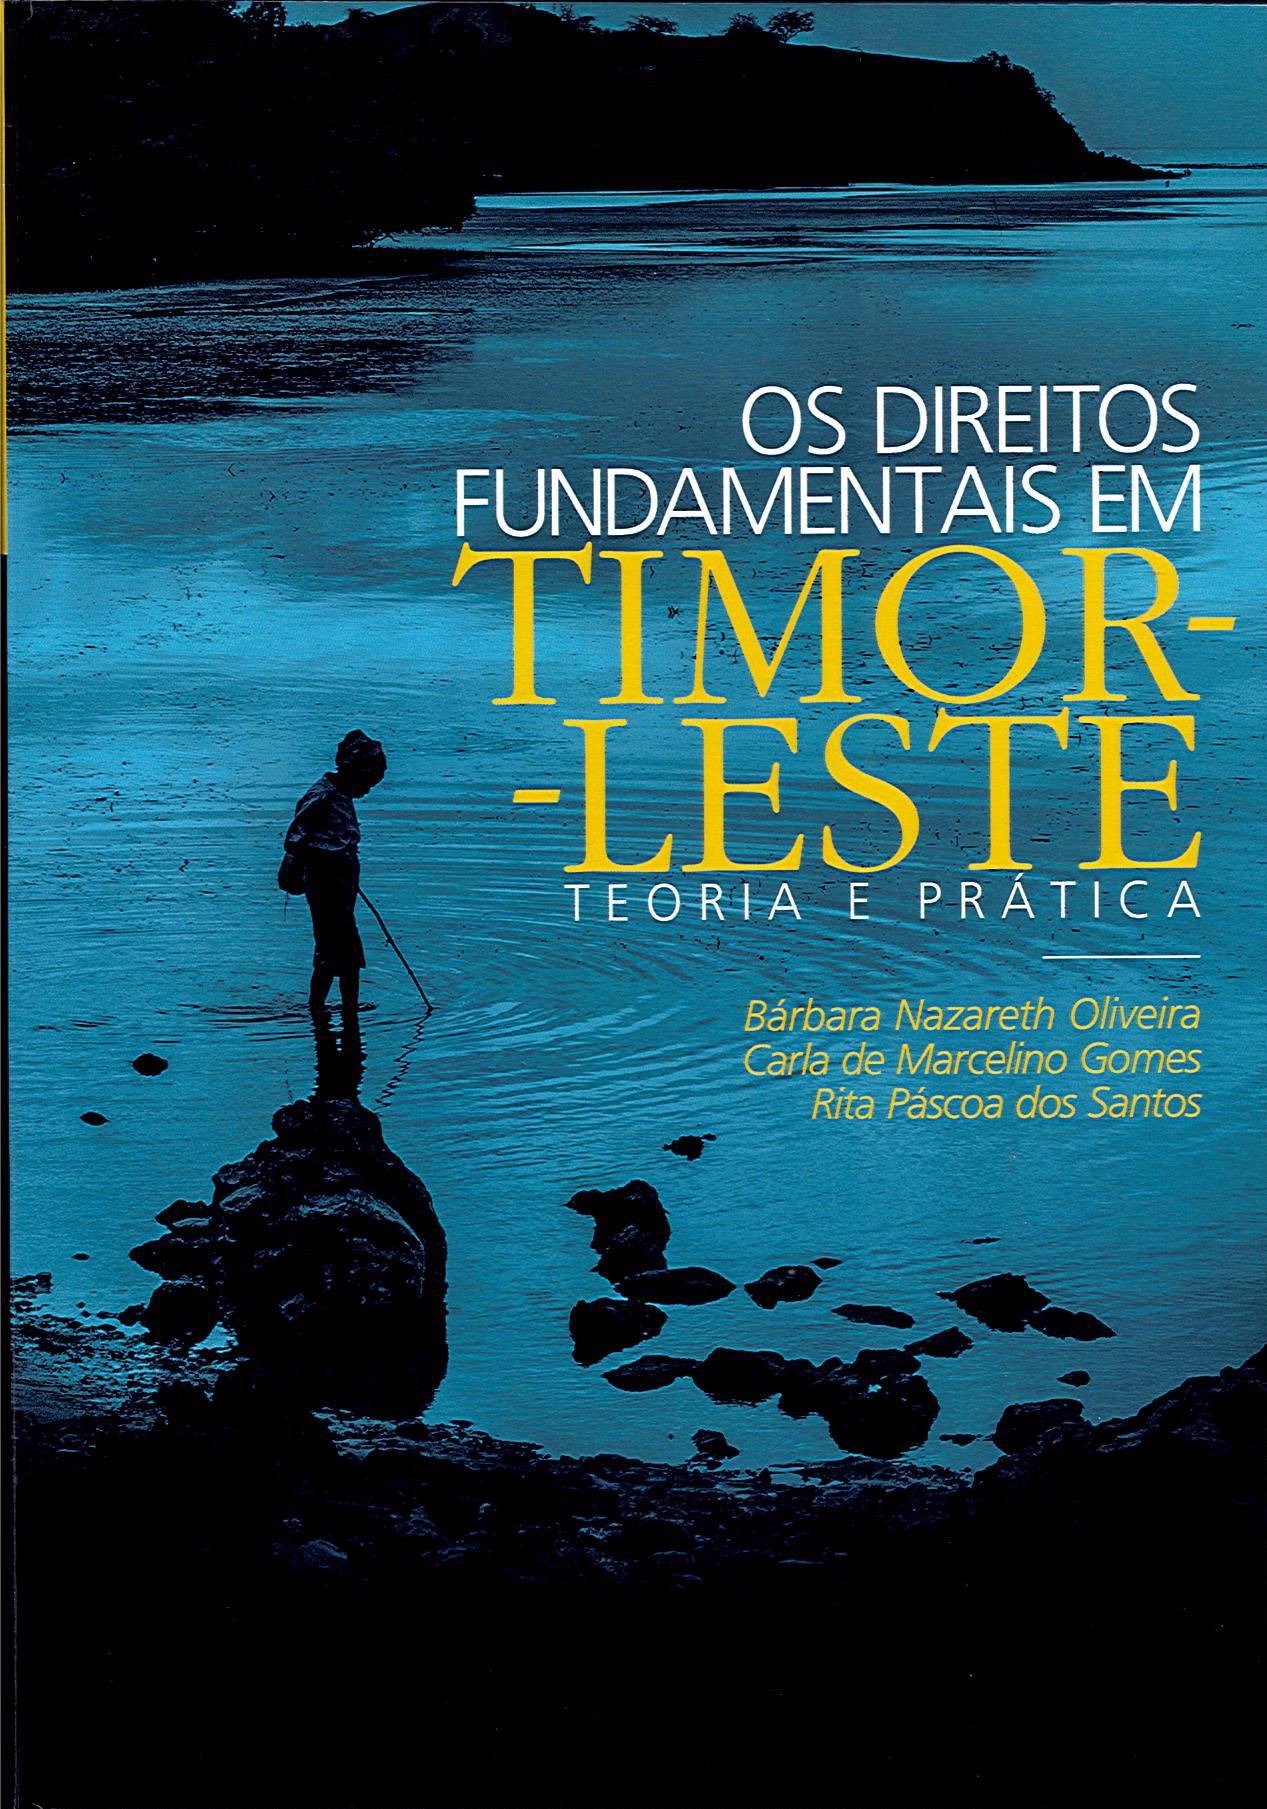 Os Direitos fundamentais em Timor-Leste - Teoria e Prática (2015)